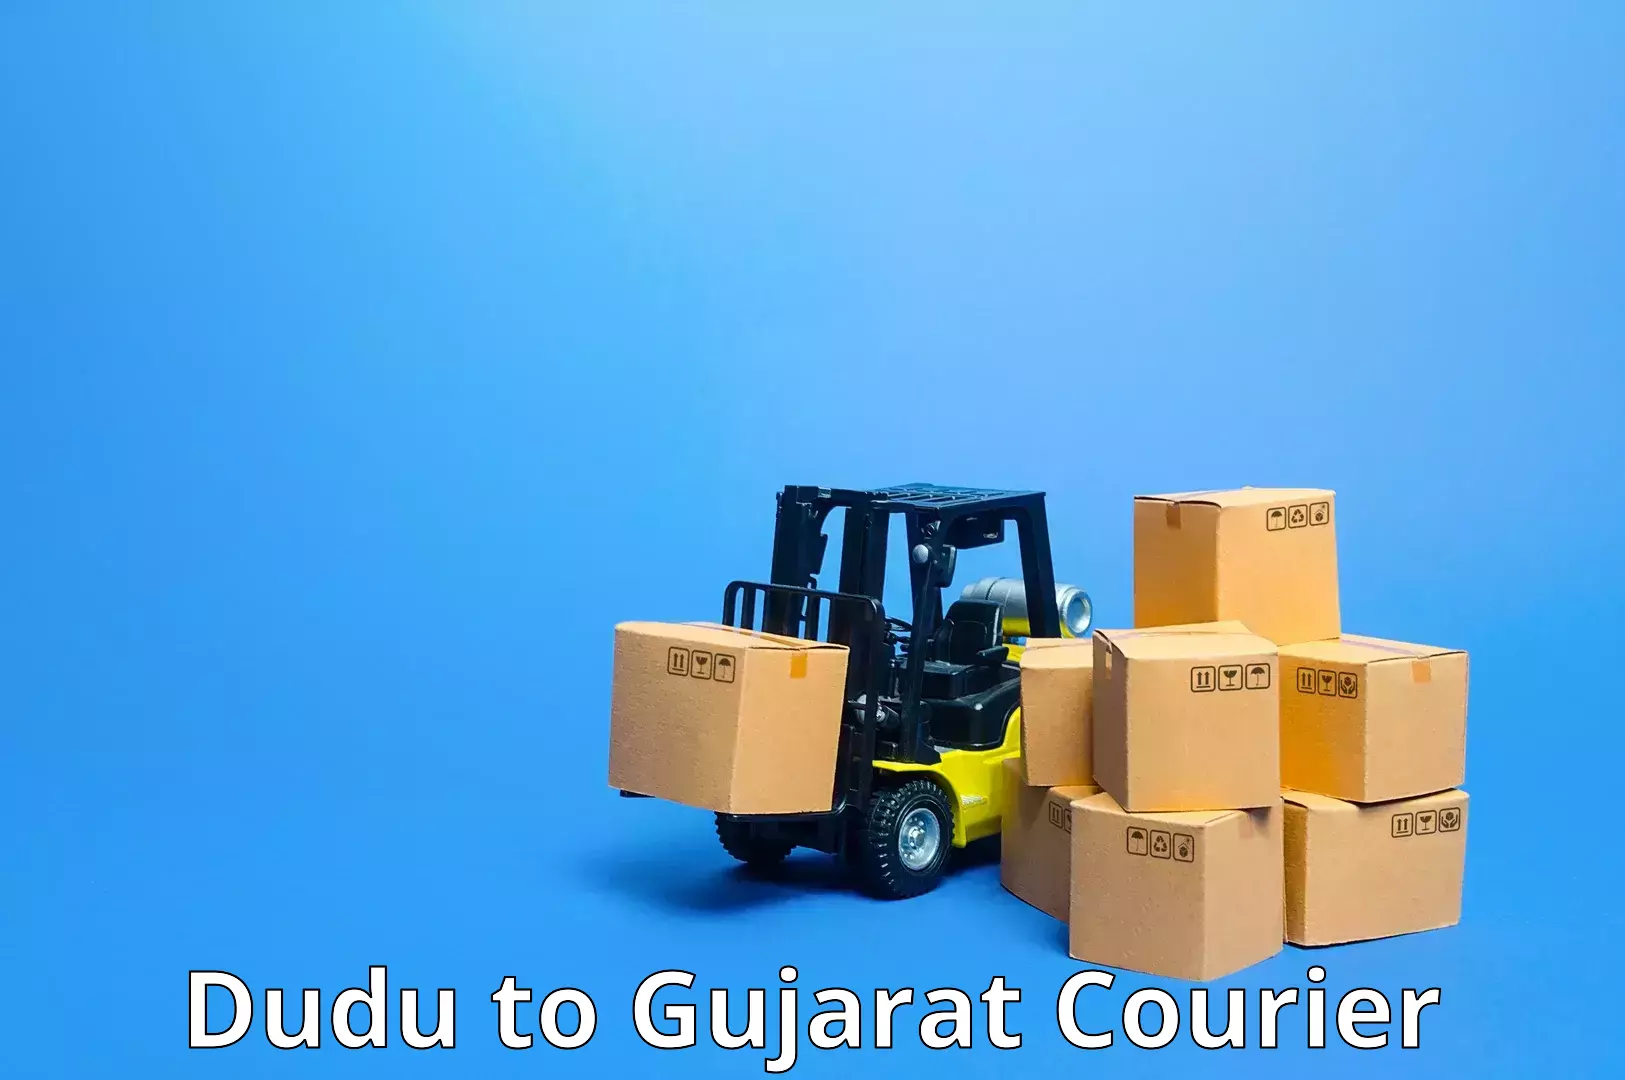 Next day courier Dudu to Gujarat